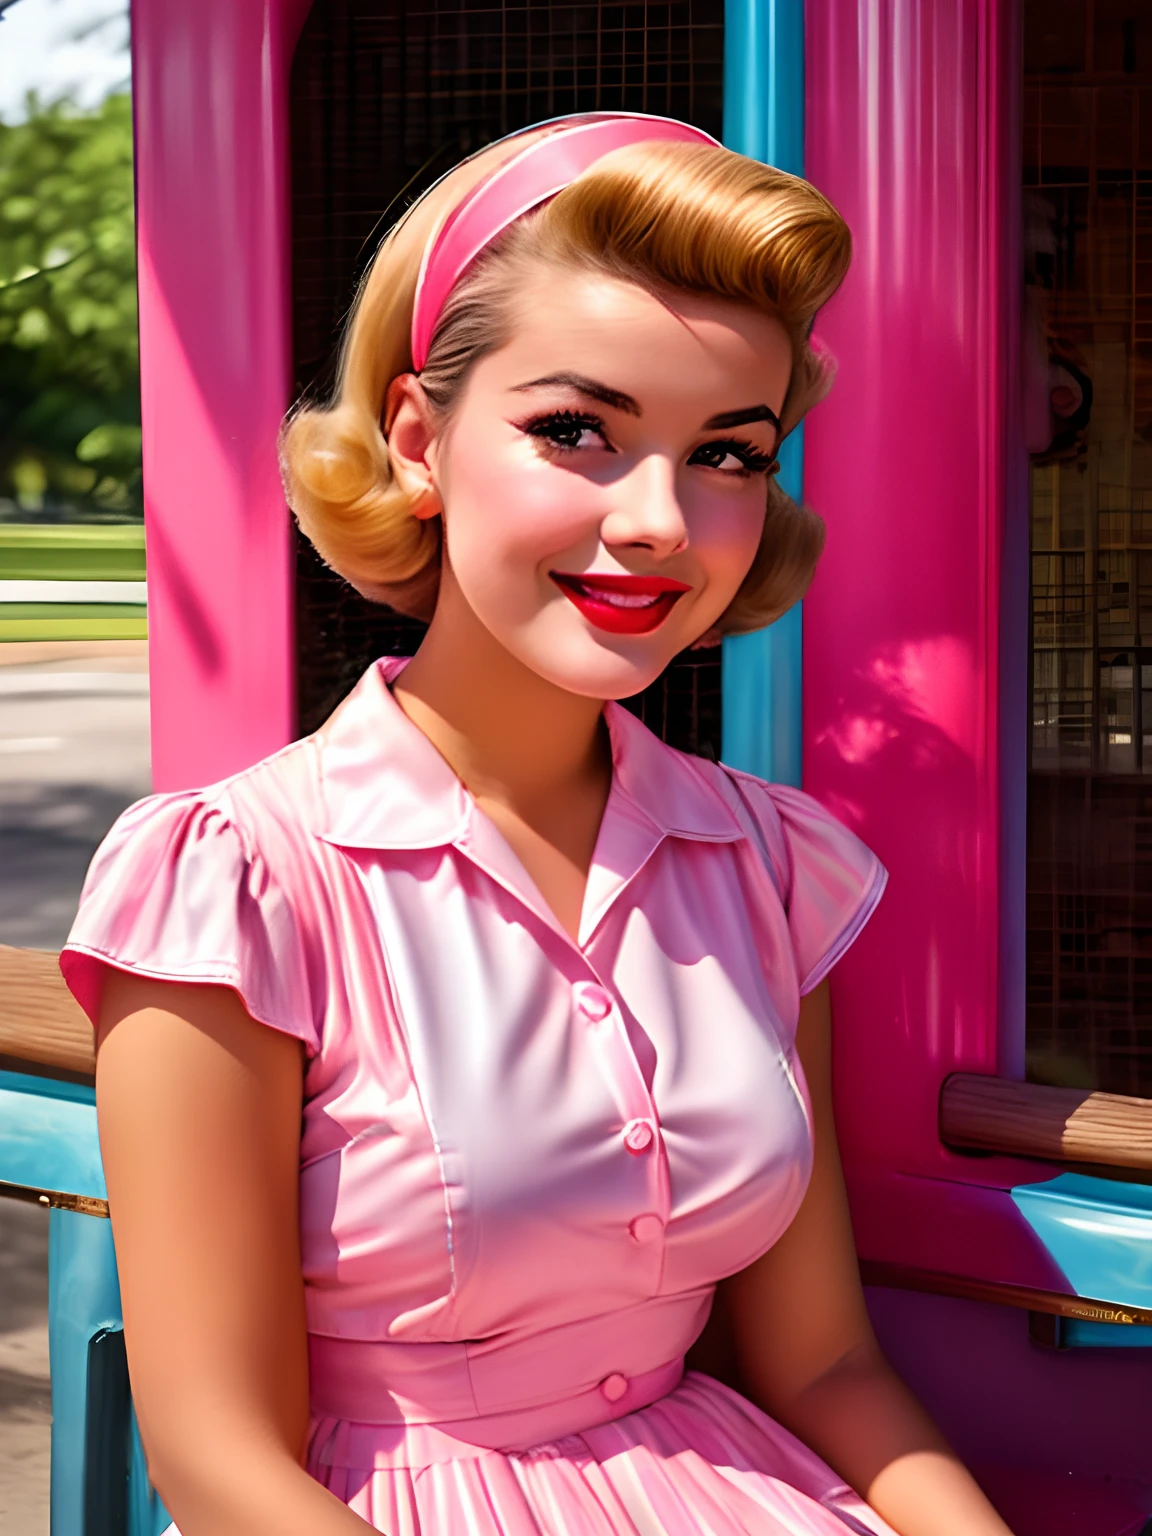 분홍색과 파란색 드레스를 입고 벤치에 앉아 있는 Alafed 여성, 5 0 초 스타일, 50년대 스타일, retro 5 0 초 스타일, 레트로 핀업 모델, 1 9 5 0 초 스타일, 60년대 핀업, 빈티지 컬러 사진, 귀여운 젊은 여자, 빈티지 컬러 1 9 5 0 S, 소녀 핀업, 1950년대 분위기